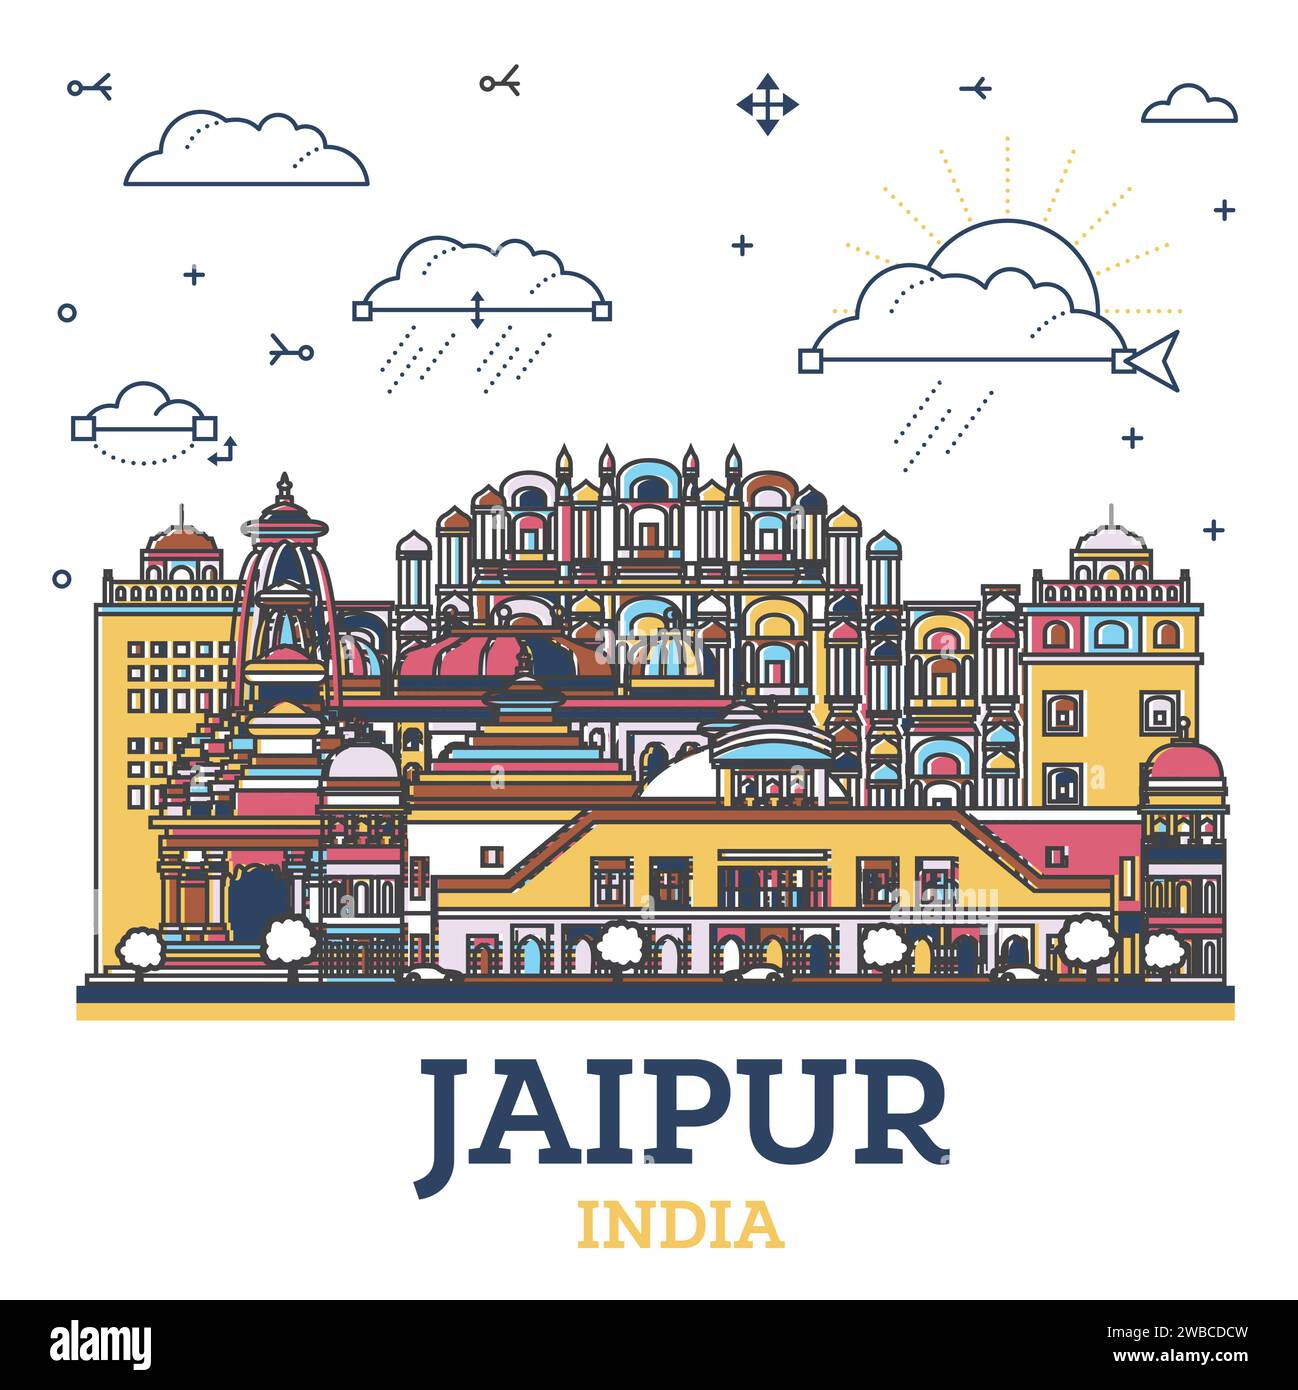 Profilo Jaipur India City Skyline con edifici storici colorati isolati su bianco. Illustrazione vettoriale. Jaipur paesaggio urbano con punti di riferimento. Illustrazione Vettoriale